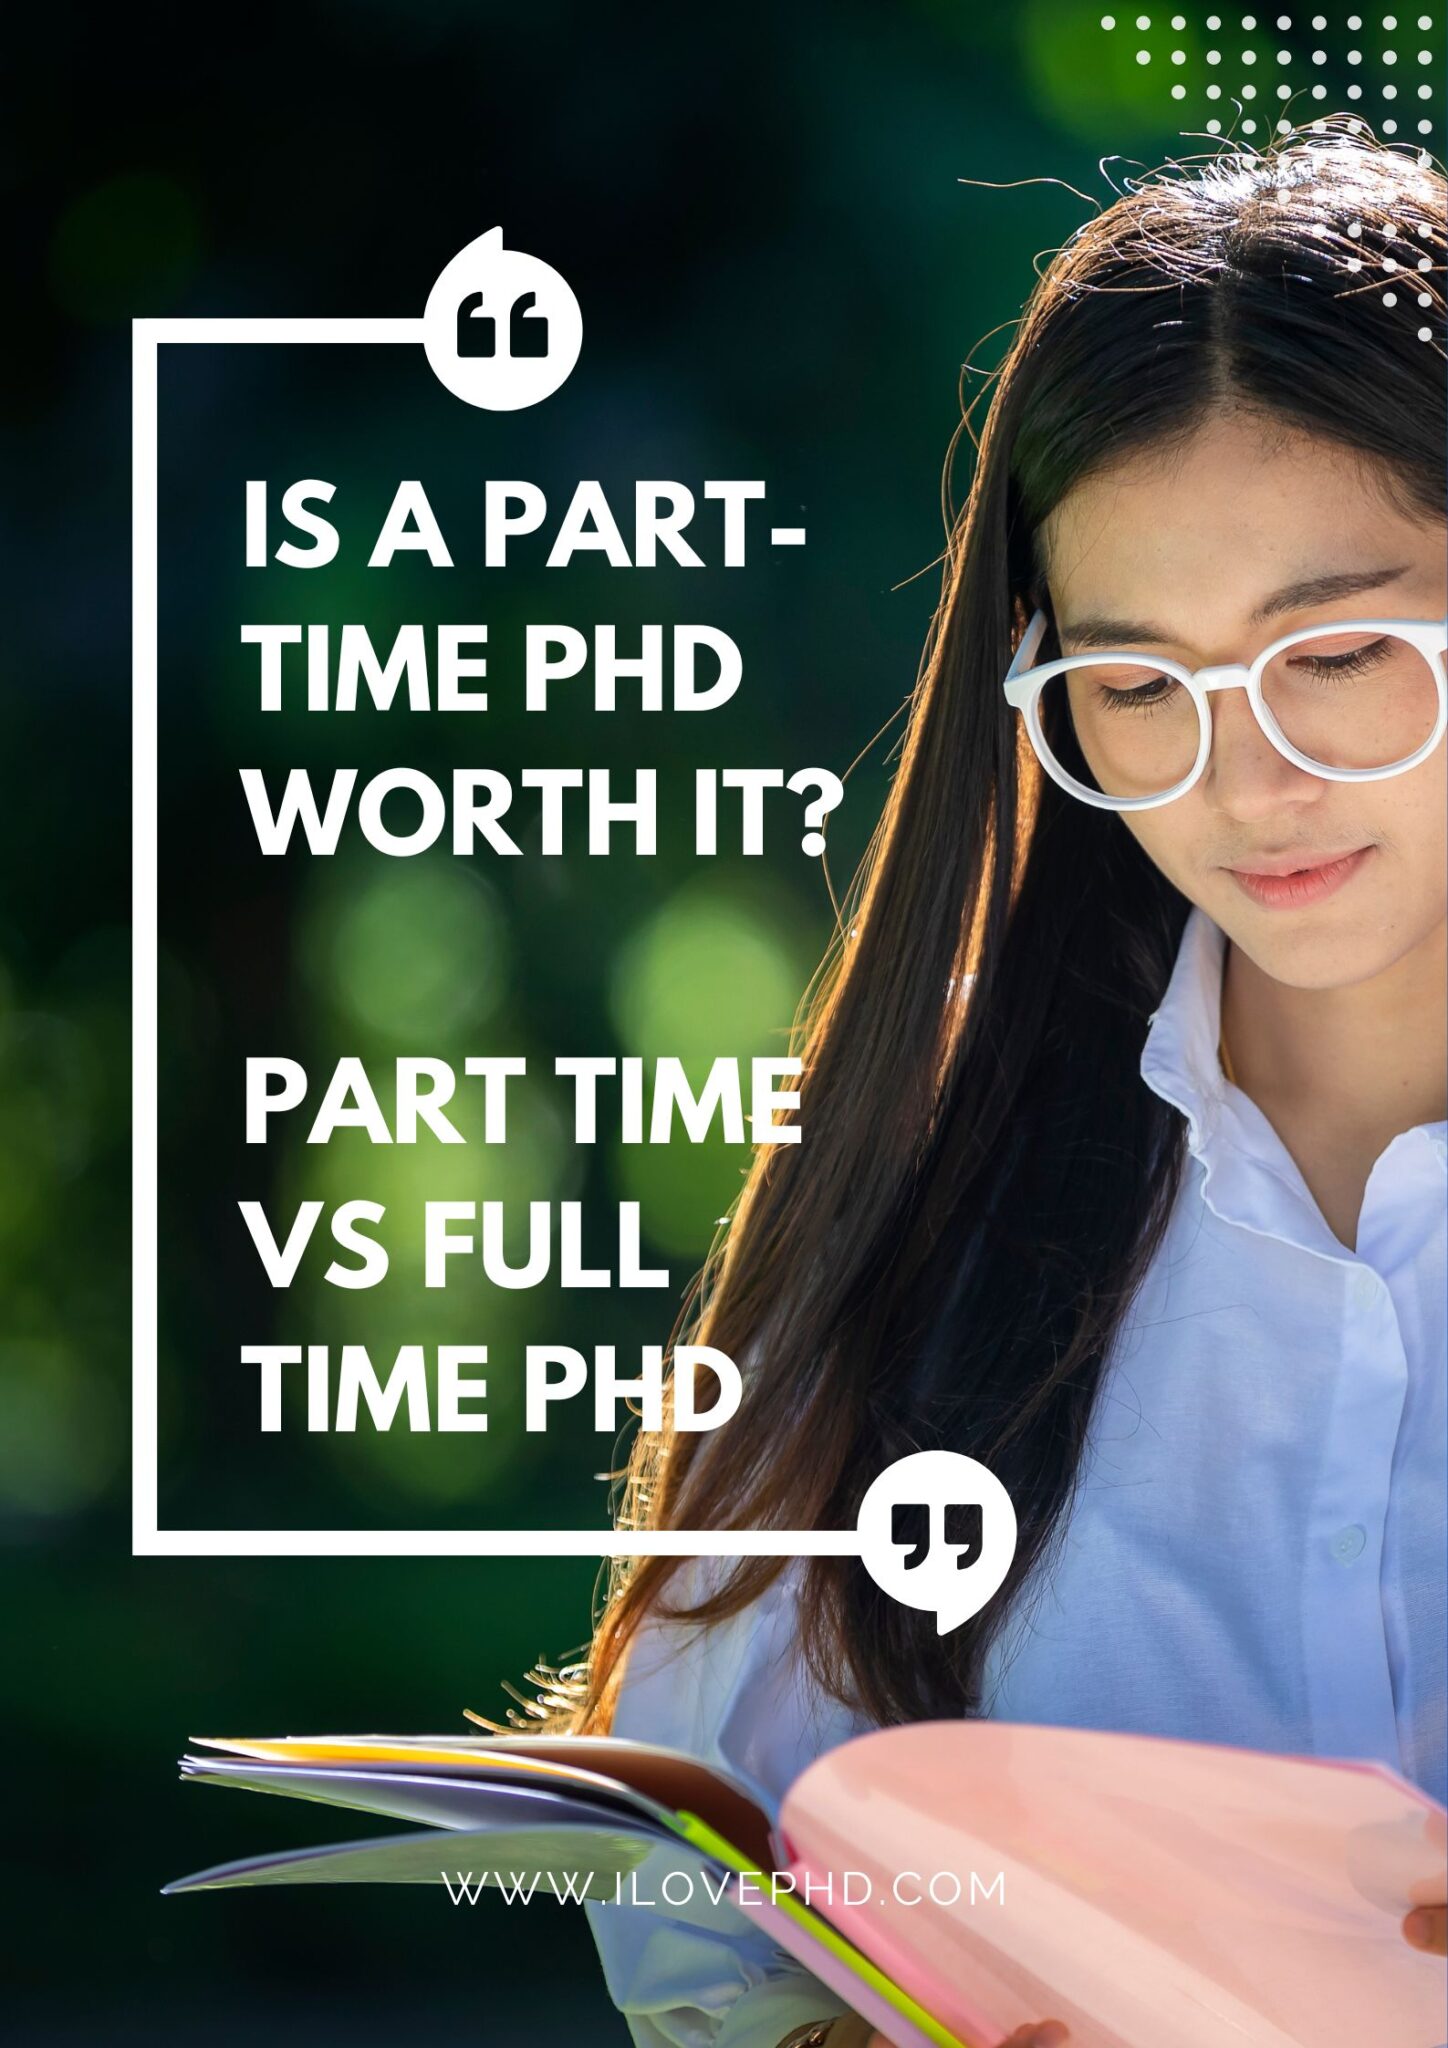 phd full time vs part time